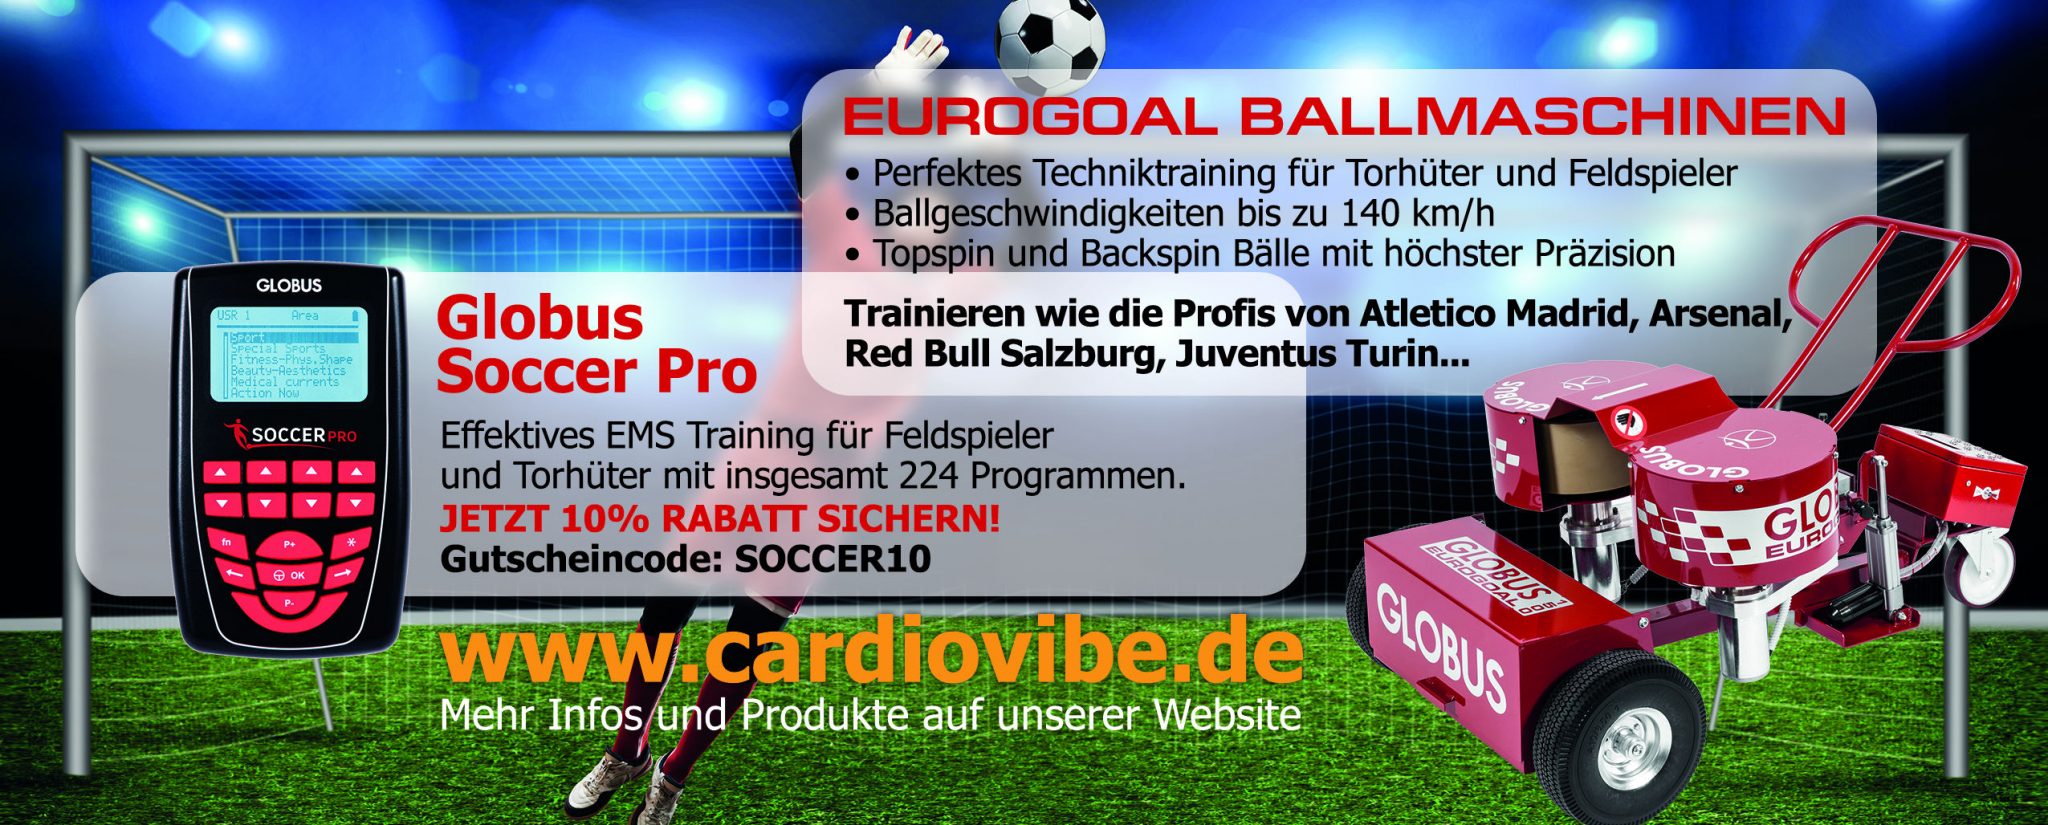 Fußball Ballwurfmaschinen Angebot